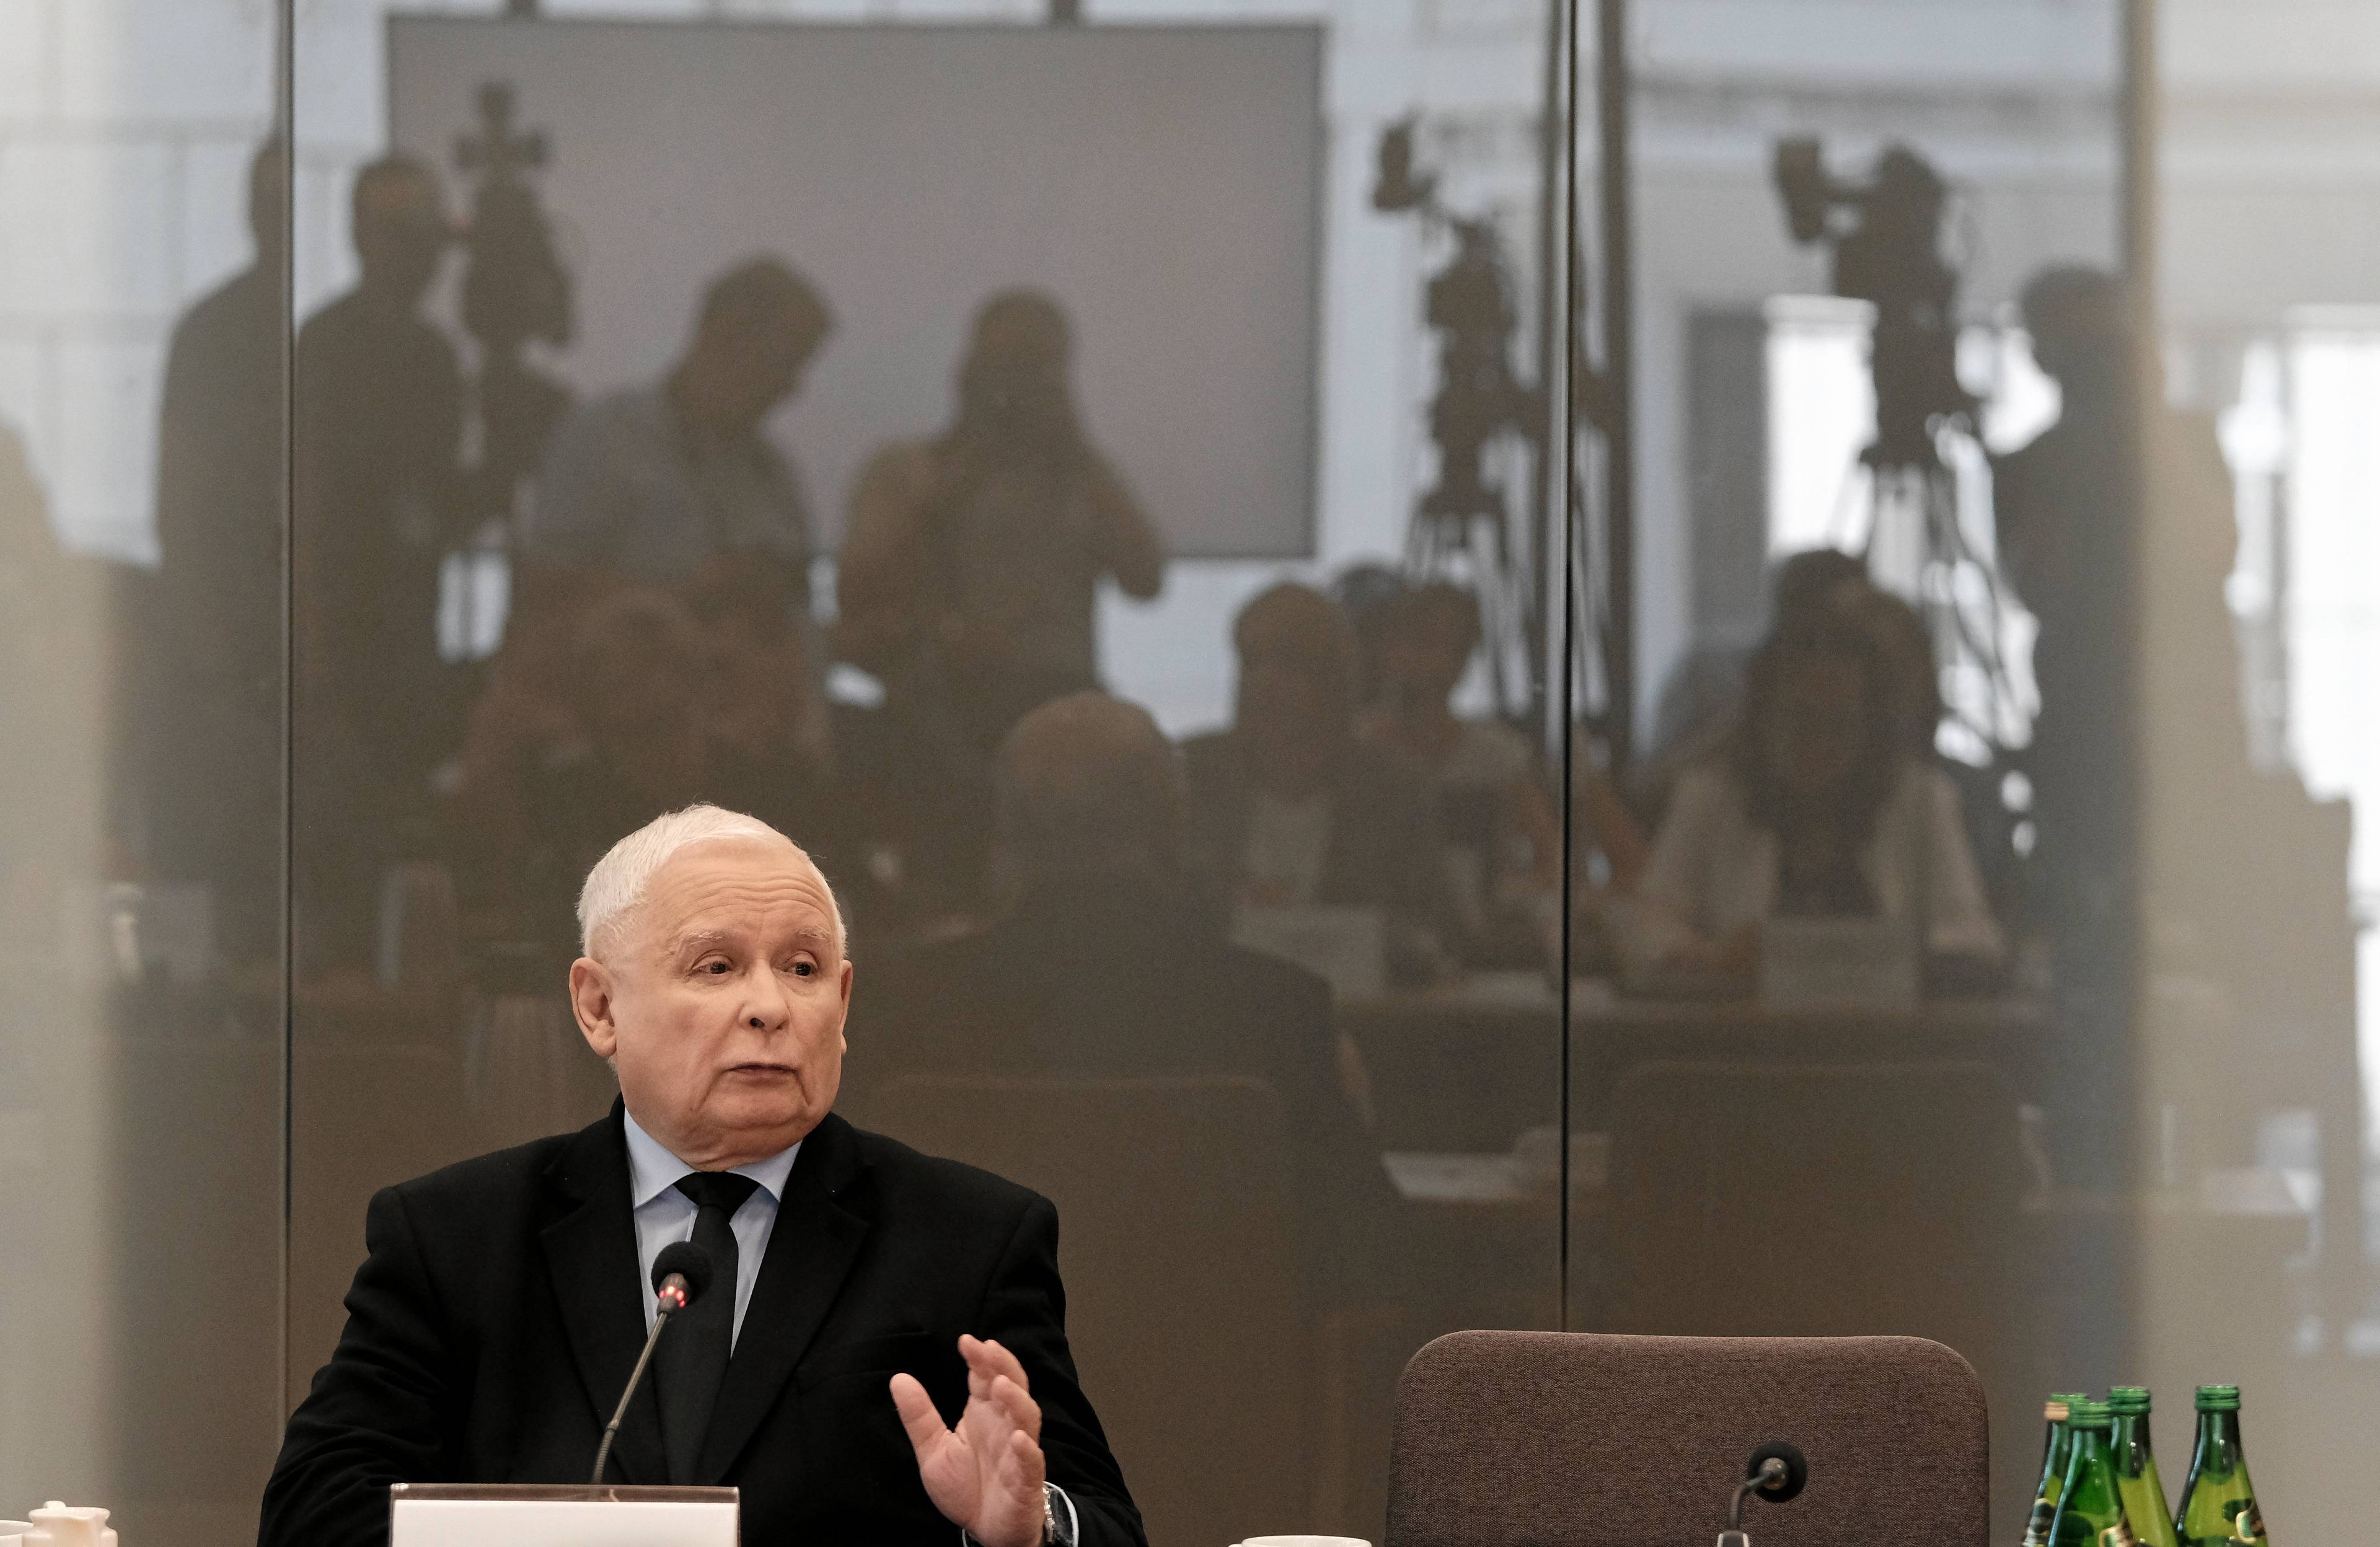 Jarosław Kaczyński podczas przesłuchania przed komisją śledczą